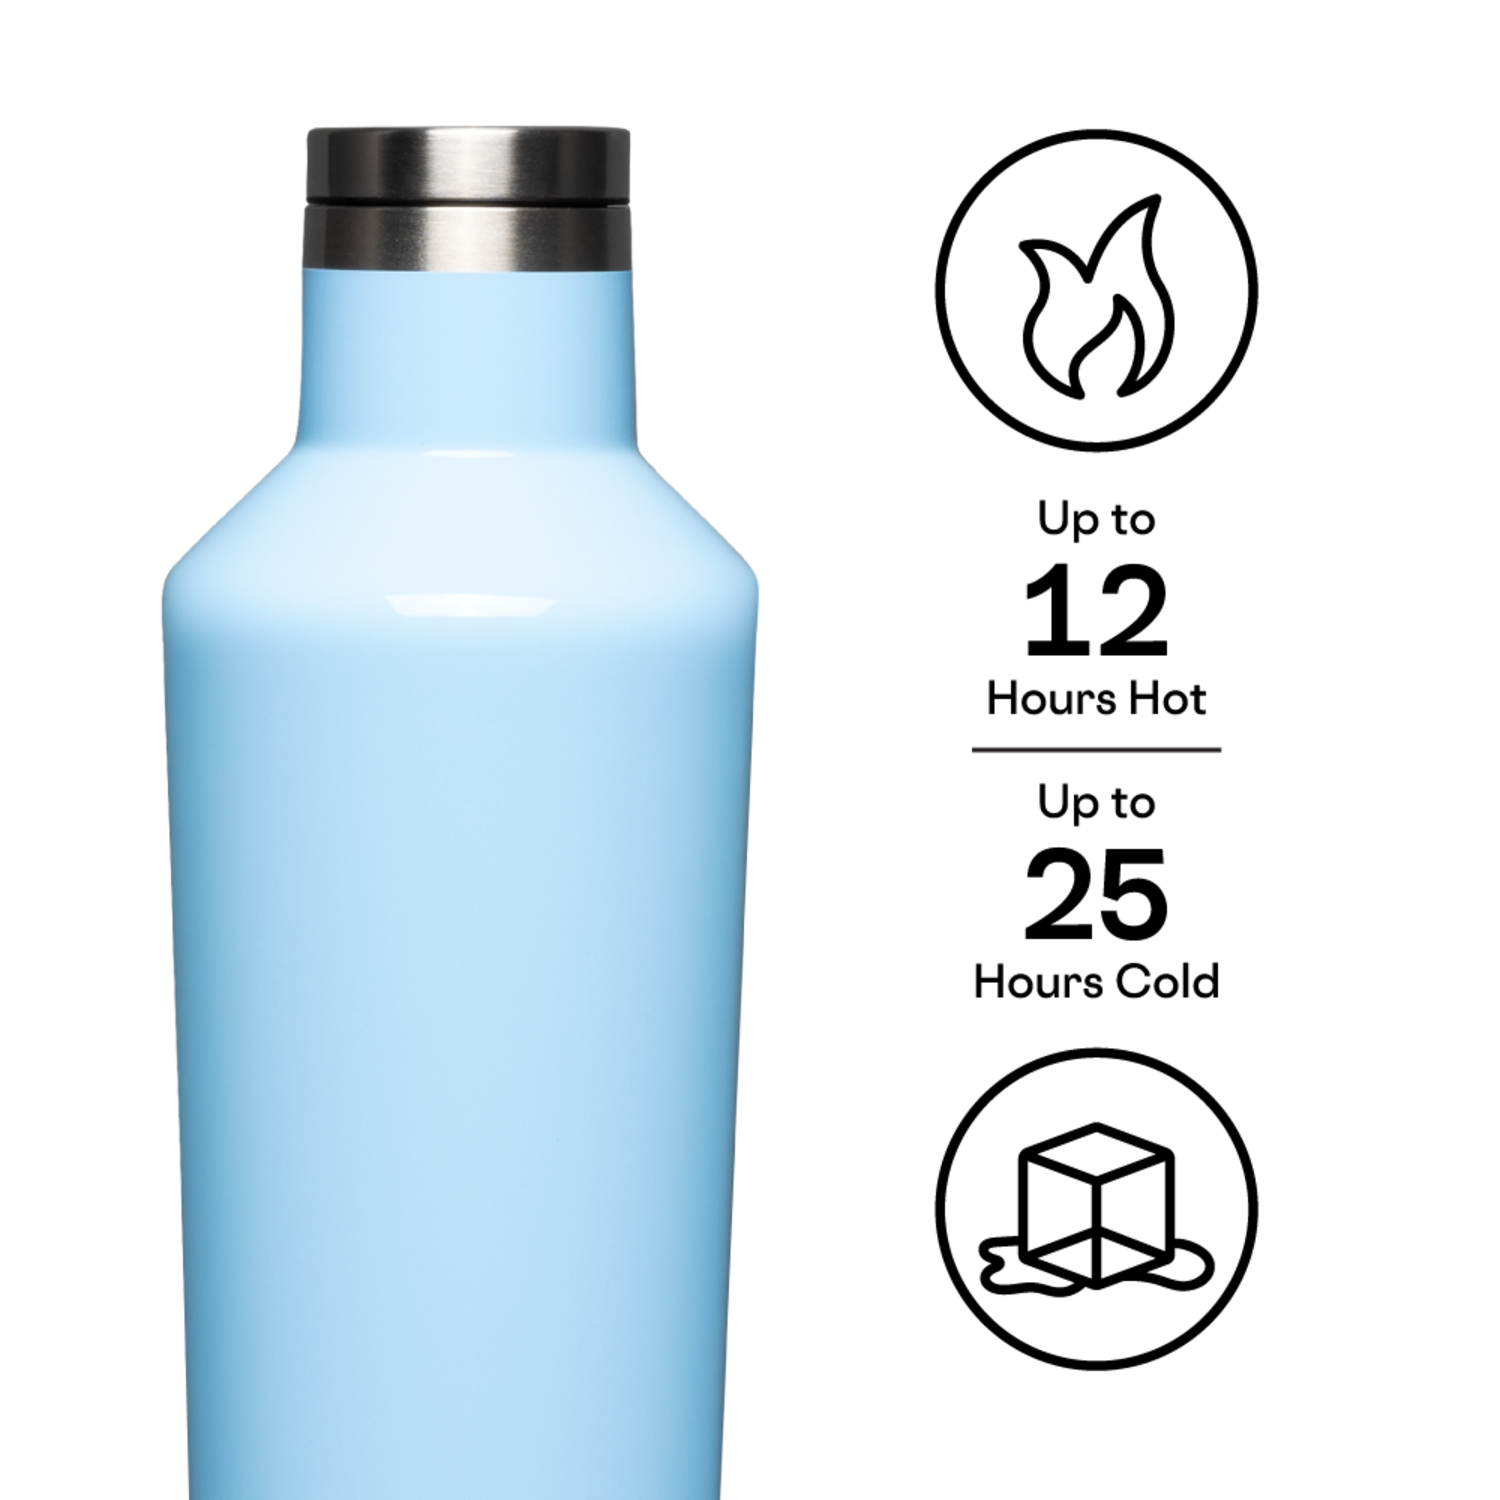 https://cdn.shoplightspeed.com/shops/606996/files/52337686/1500x4000x3/16oz-classic-canteen-water-bottle.jpg